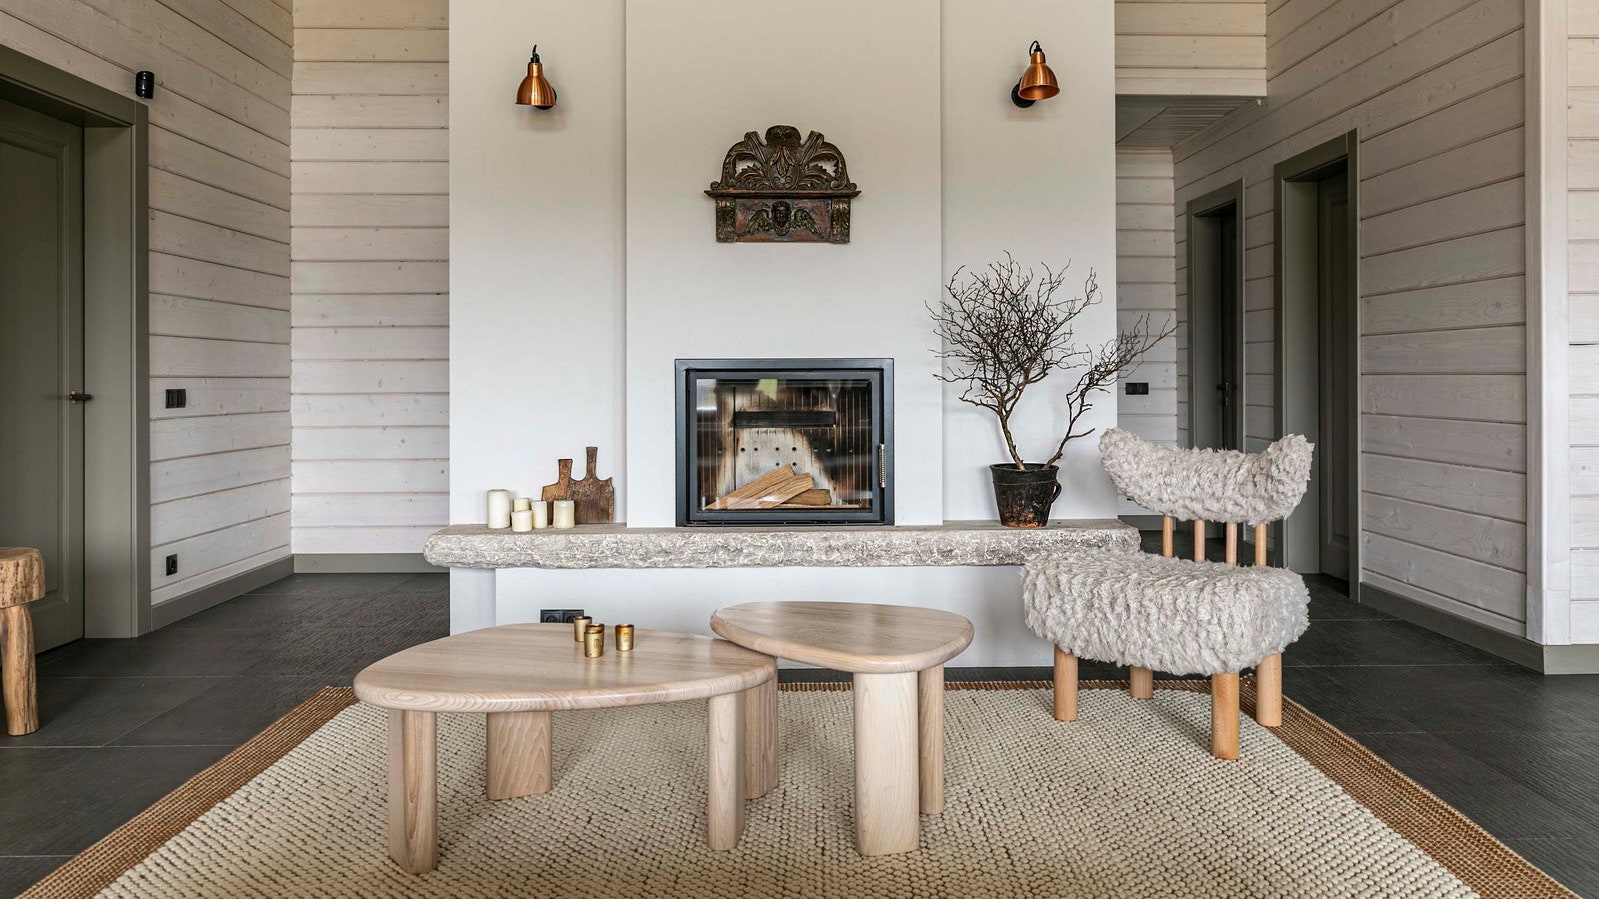 Дизайн гостиной с камином в деревянном доме | Фото интерьера